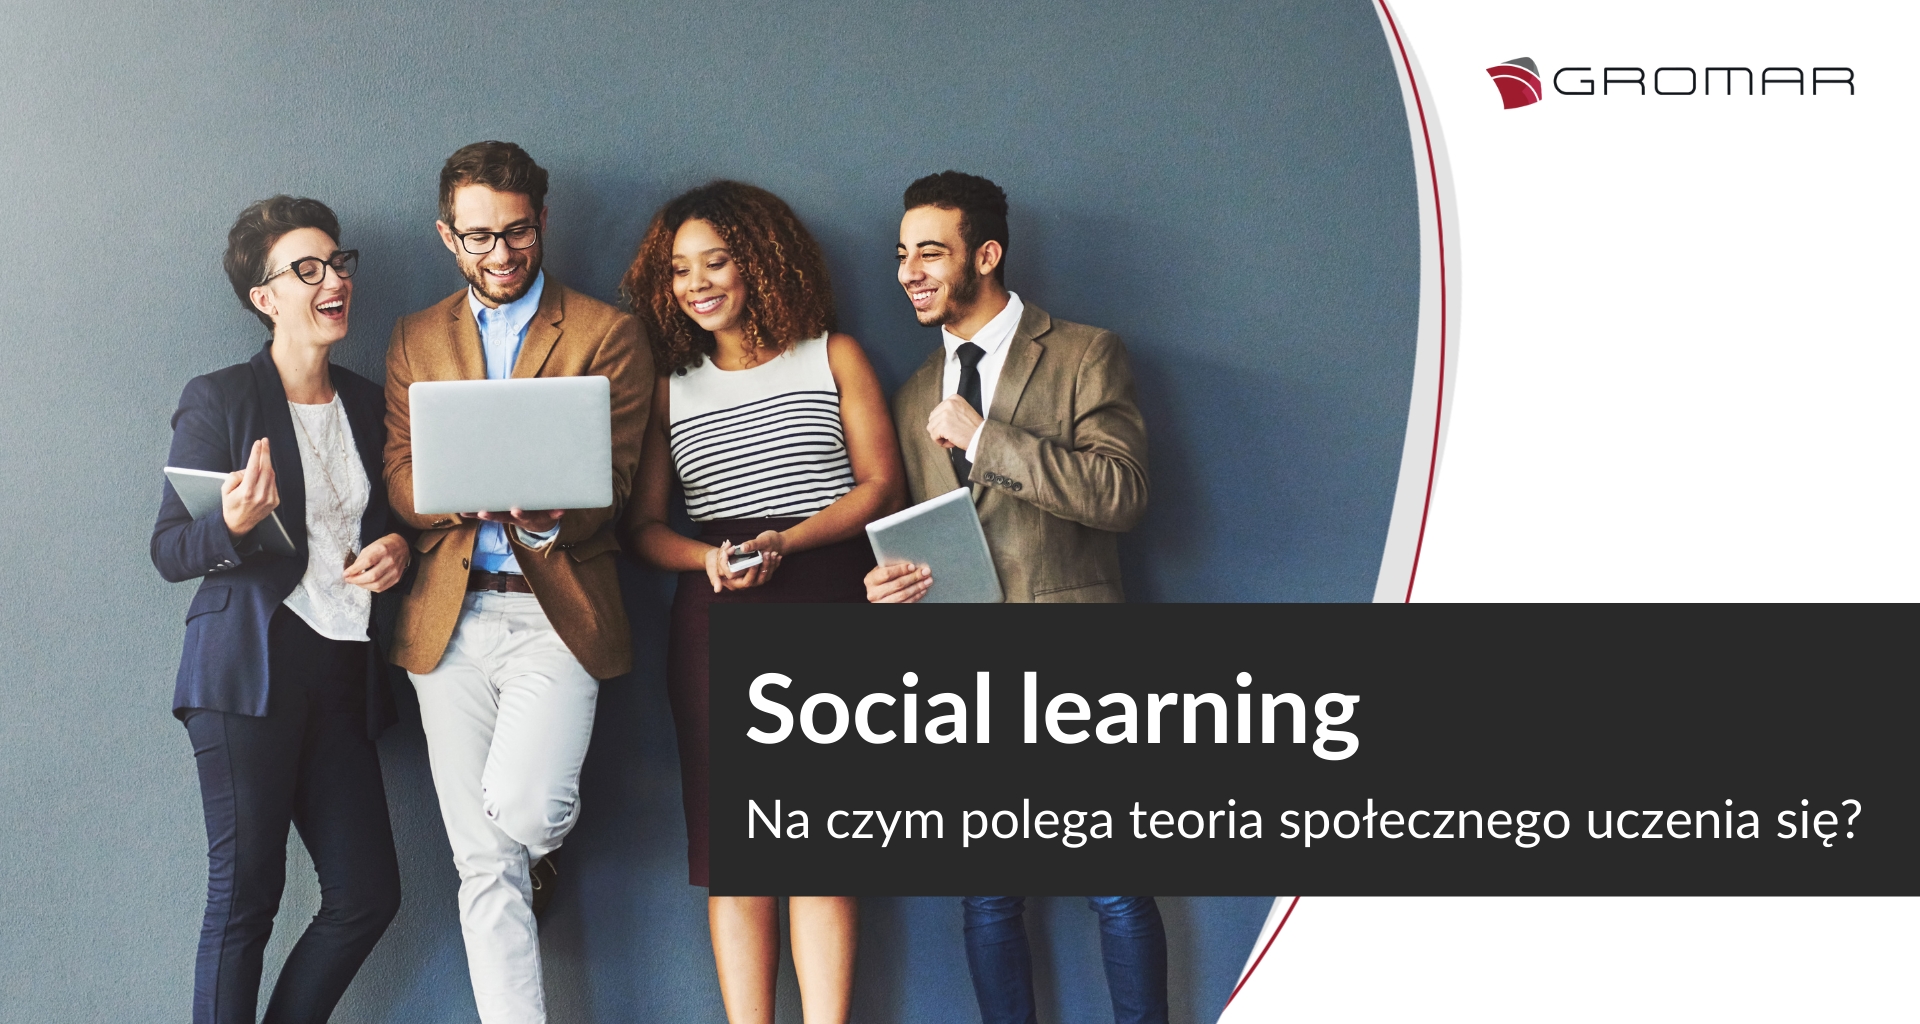 Social learning - na czym polega teoria społecznego uczenia się?